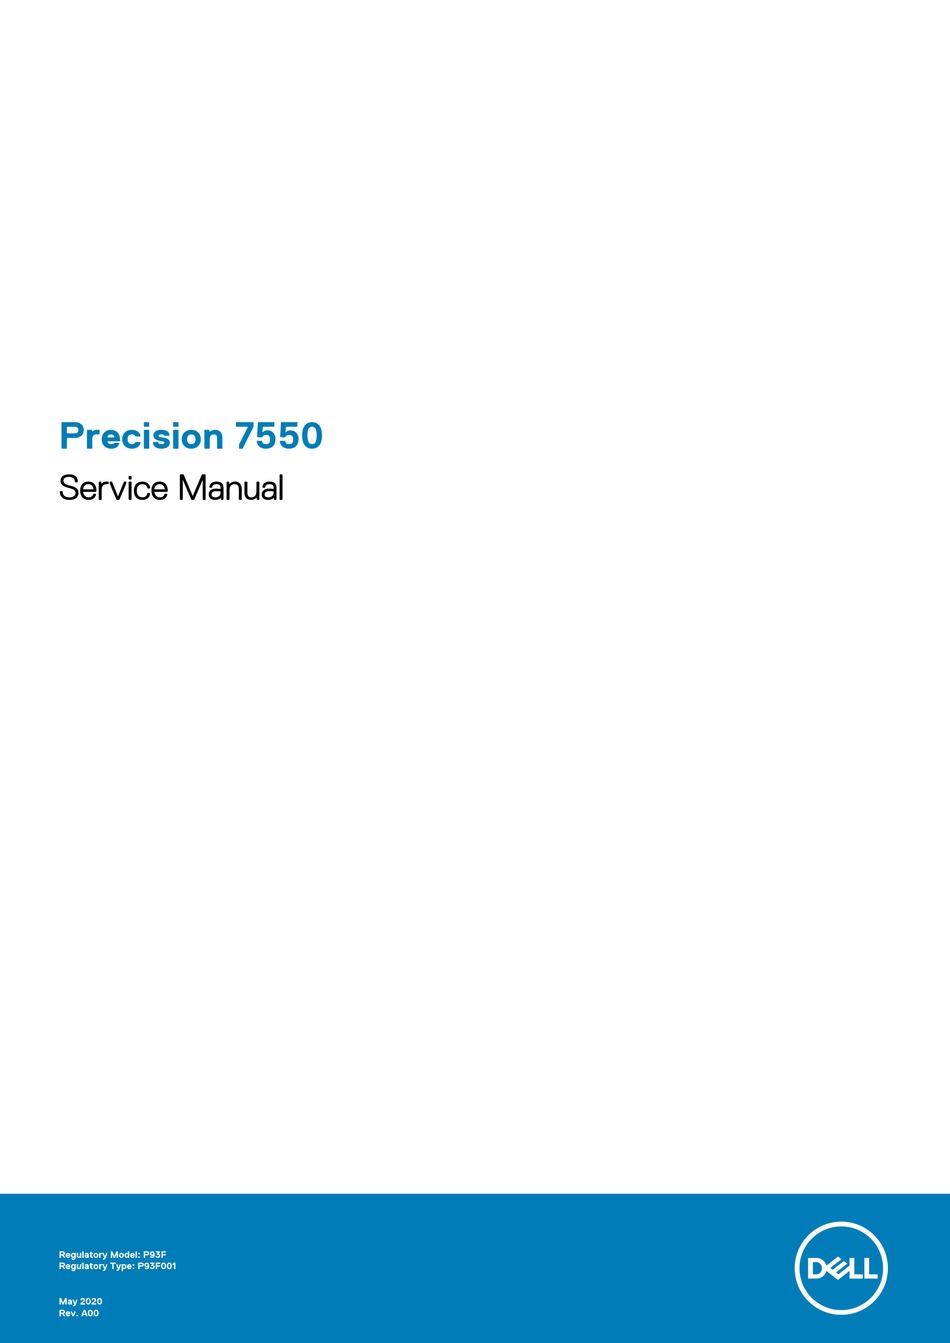 DELL PRECISION 7550 SERVICE MANUAL Pdf Download | ManualsLib